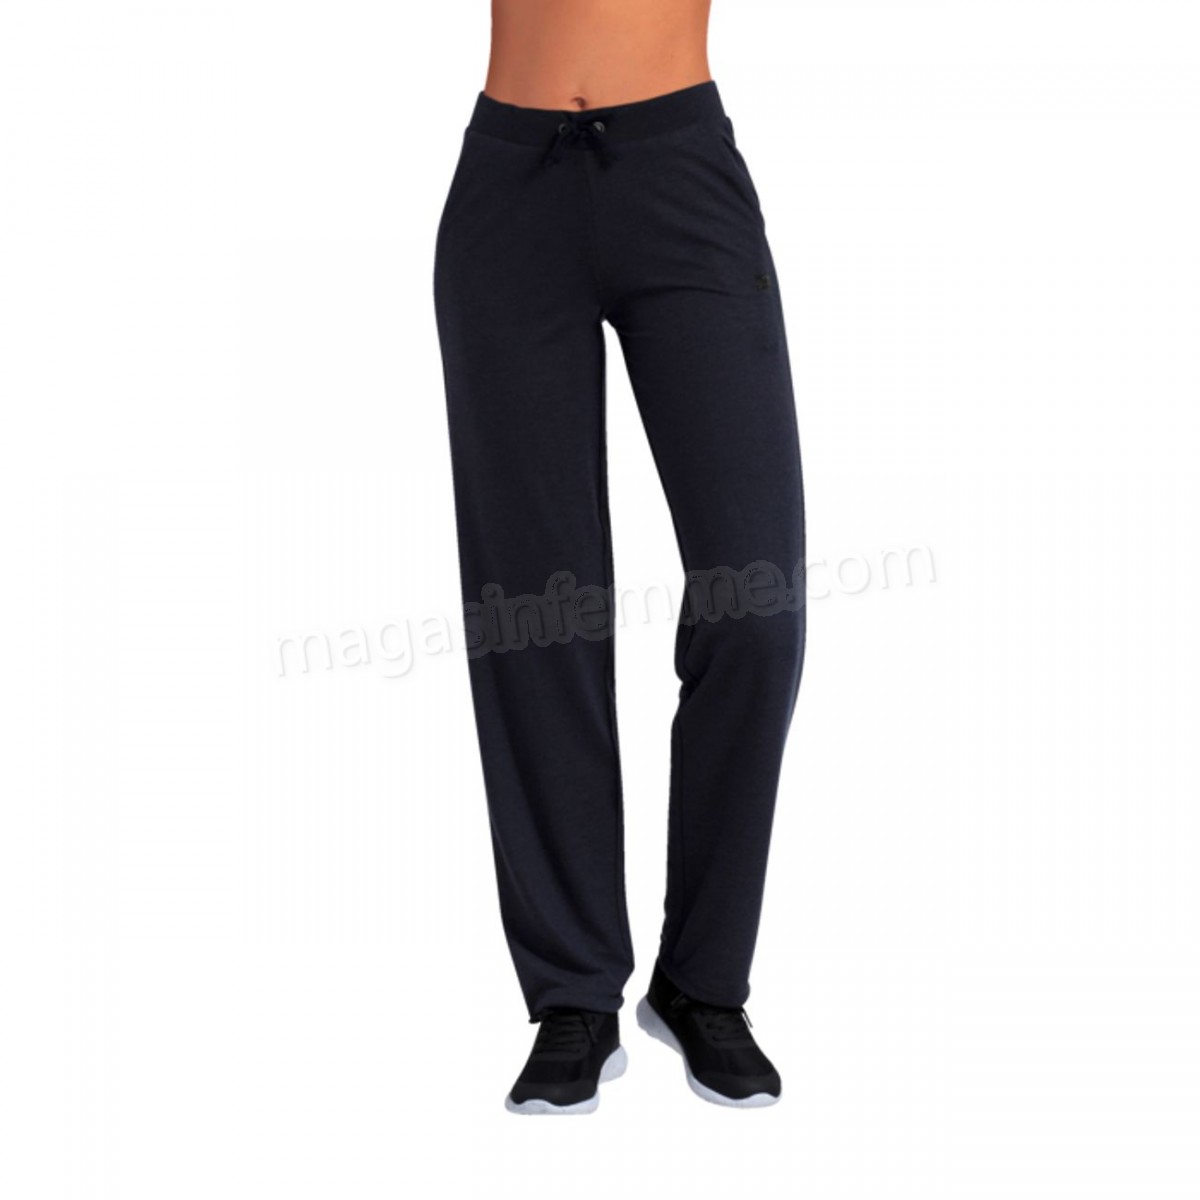 Athlitech-Pantalon de Yoga femme ATHLITECH Laura en solde - -3